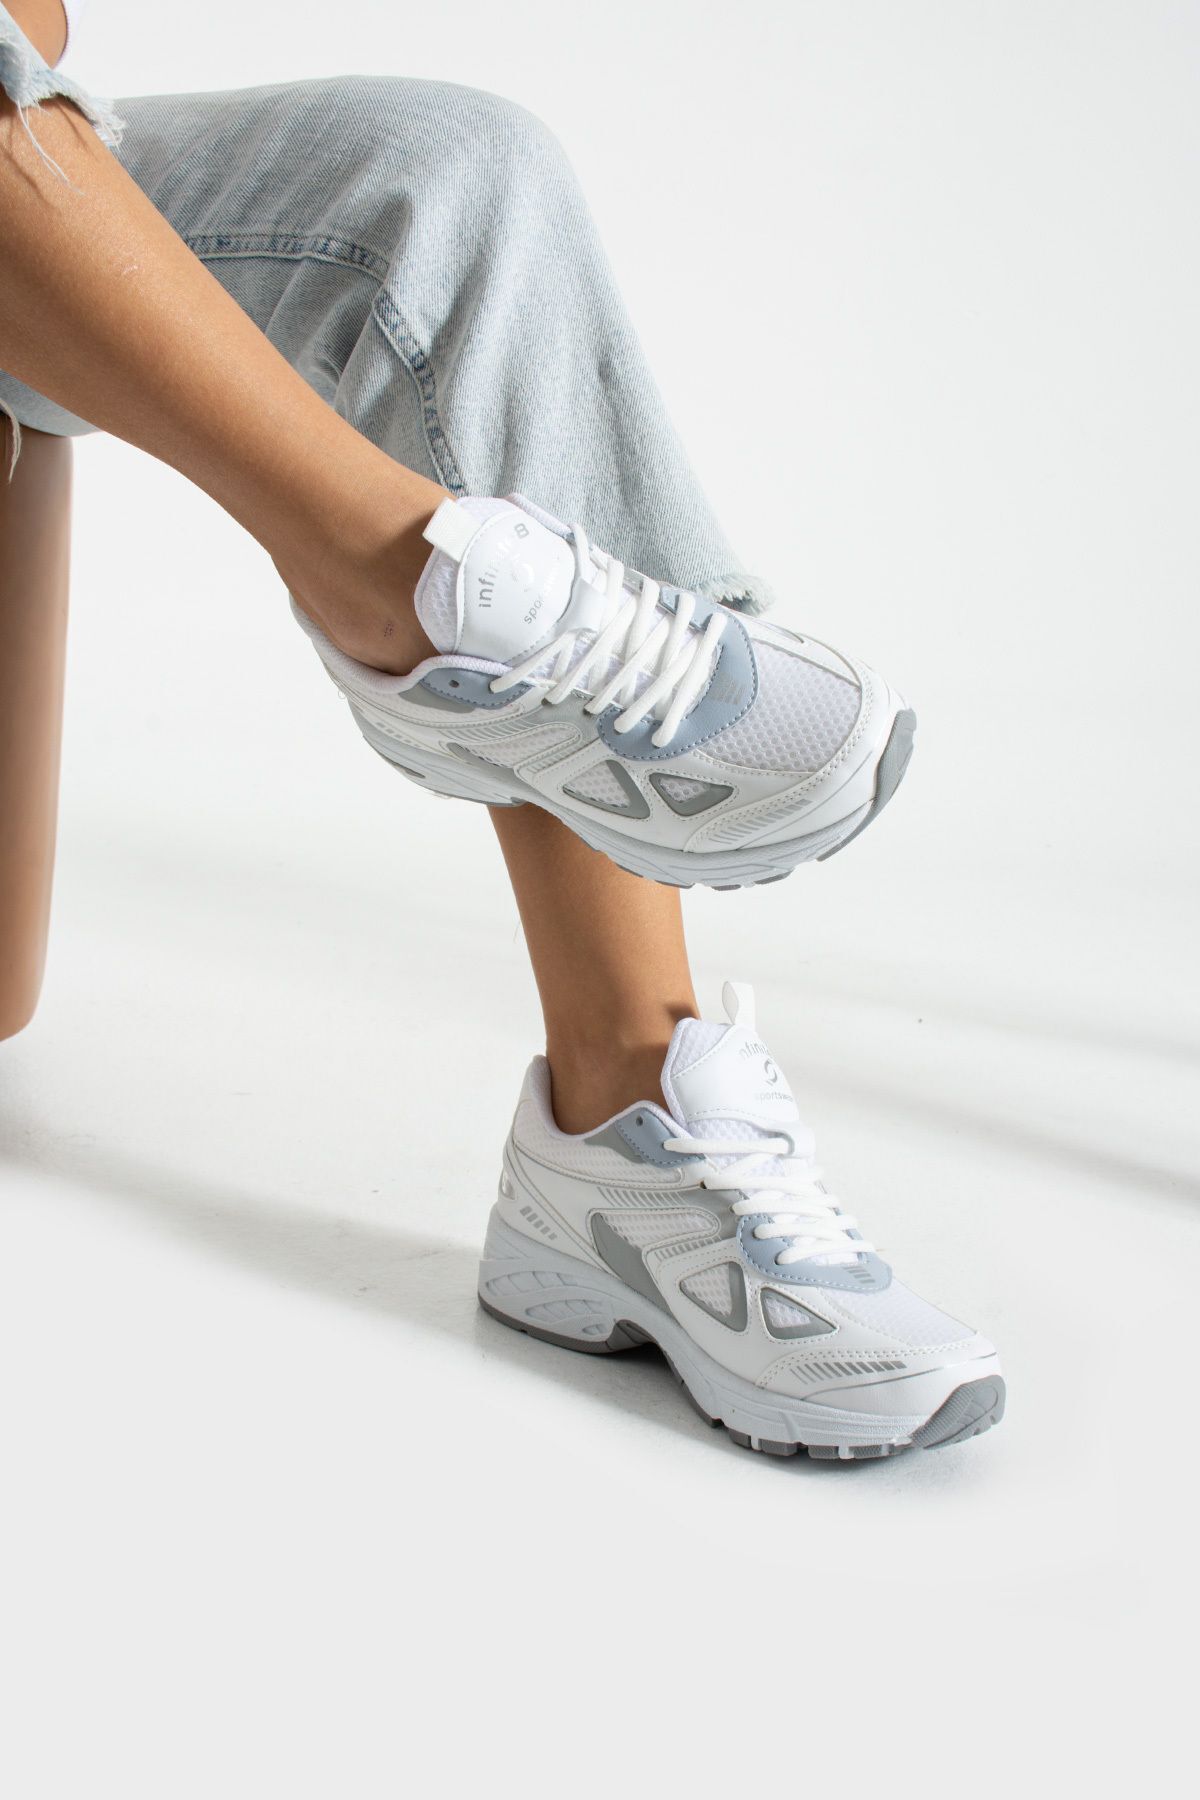 infinite8 Unisex Kadın Erkek Ortopedik Triko Spor Ayakkabı Sneaker İNF-531